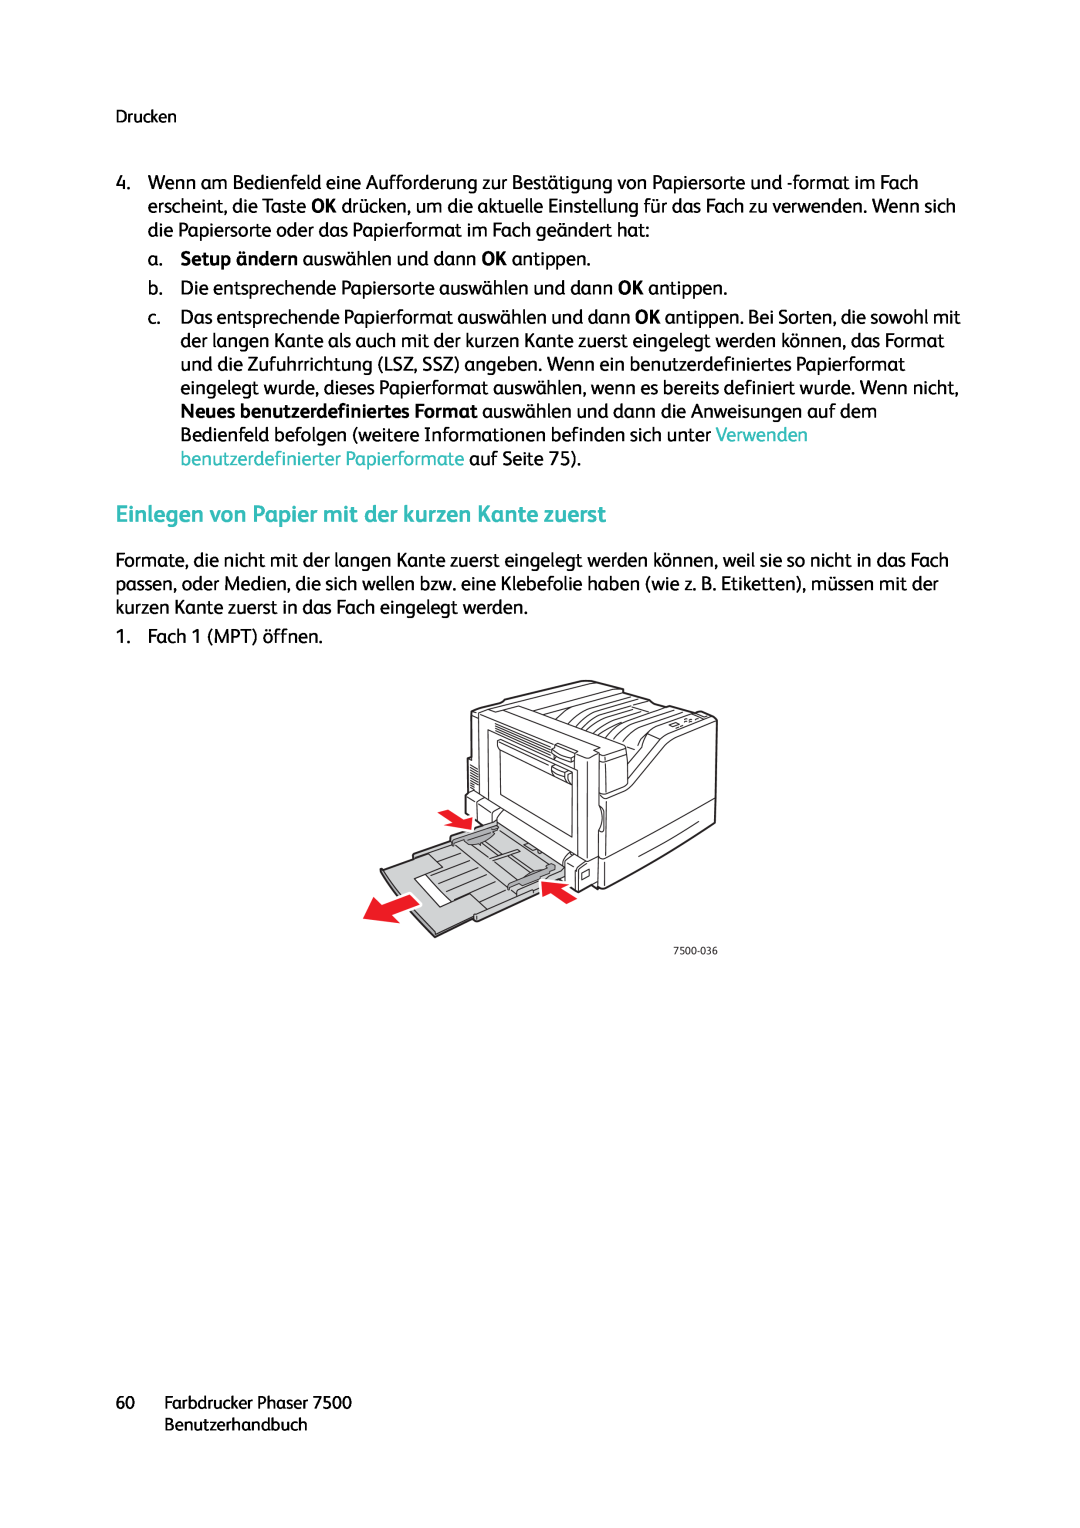 Xerox 7500 color printer manual Einlegen von Papier mit der kurzen Kante zuerst 